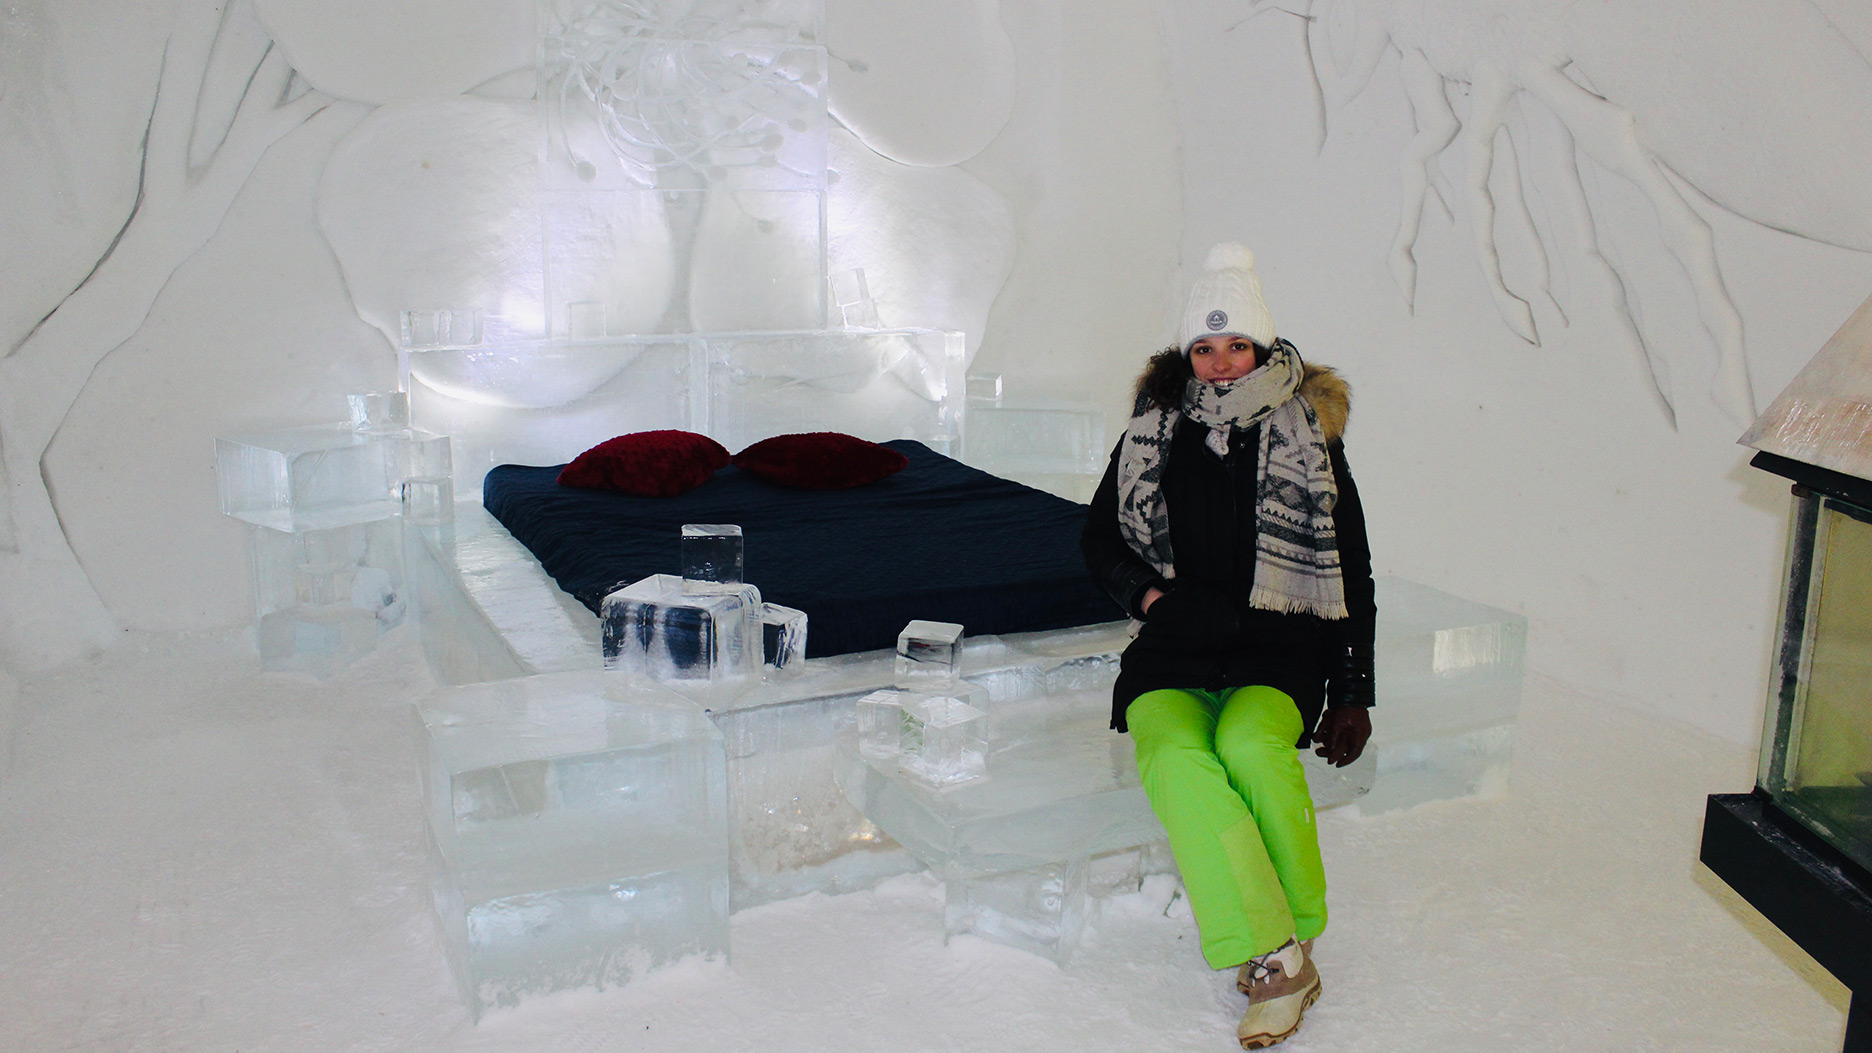 lit en glace à l'hotel de glace